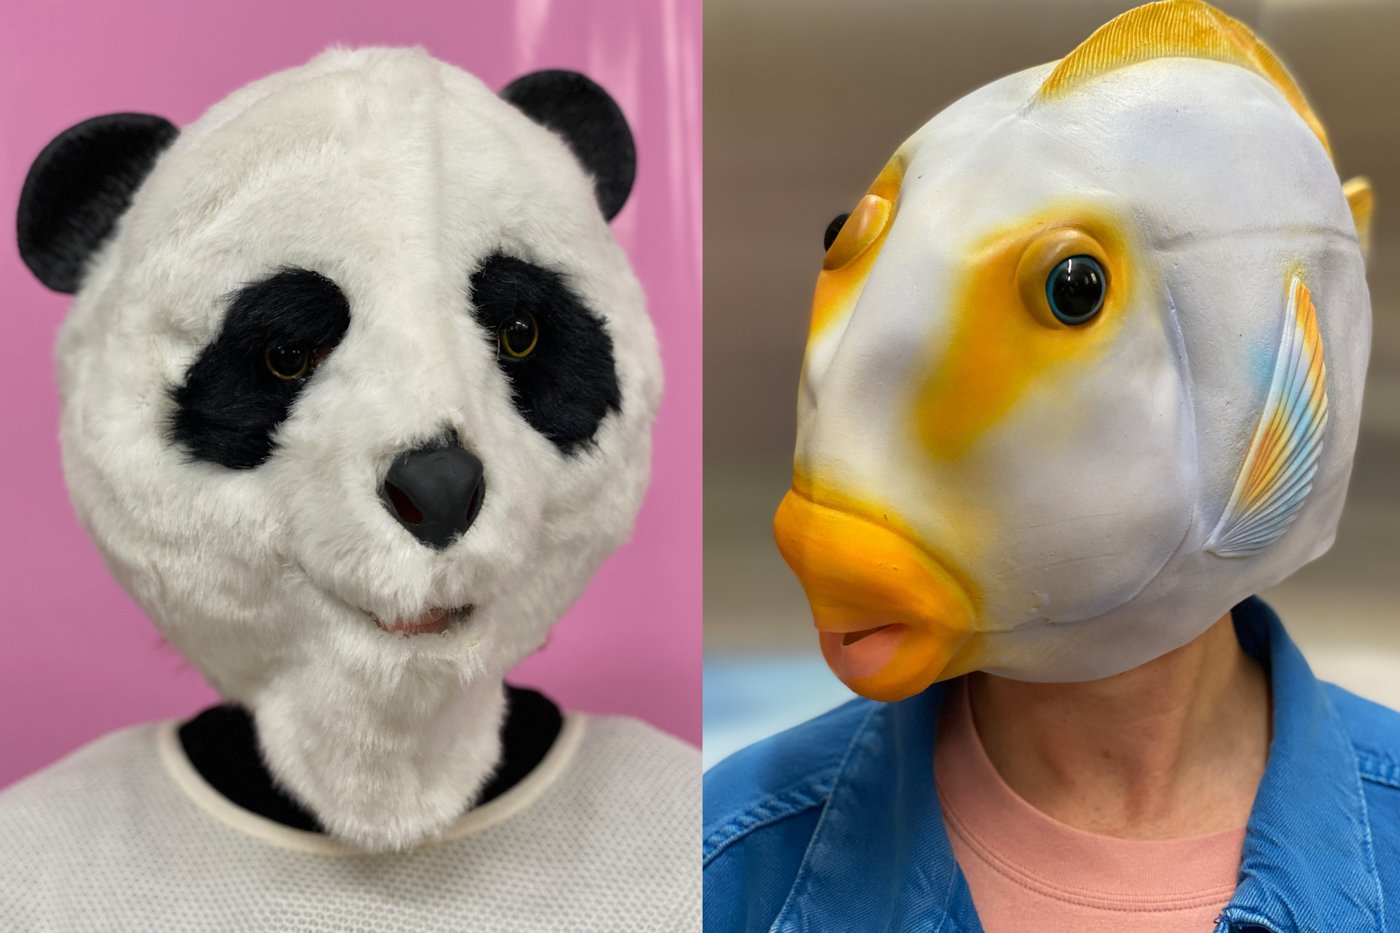 Foto von zwei Personen, eine trägt eine Panda Maske vor rosa Hintergrund und die andere eine Fisch Maske vor blauem Hintergrund